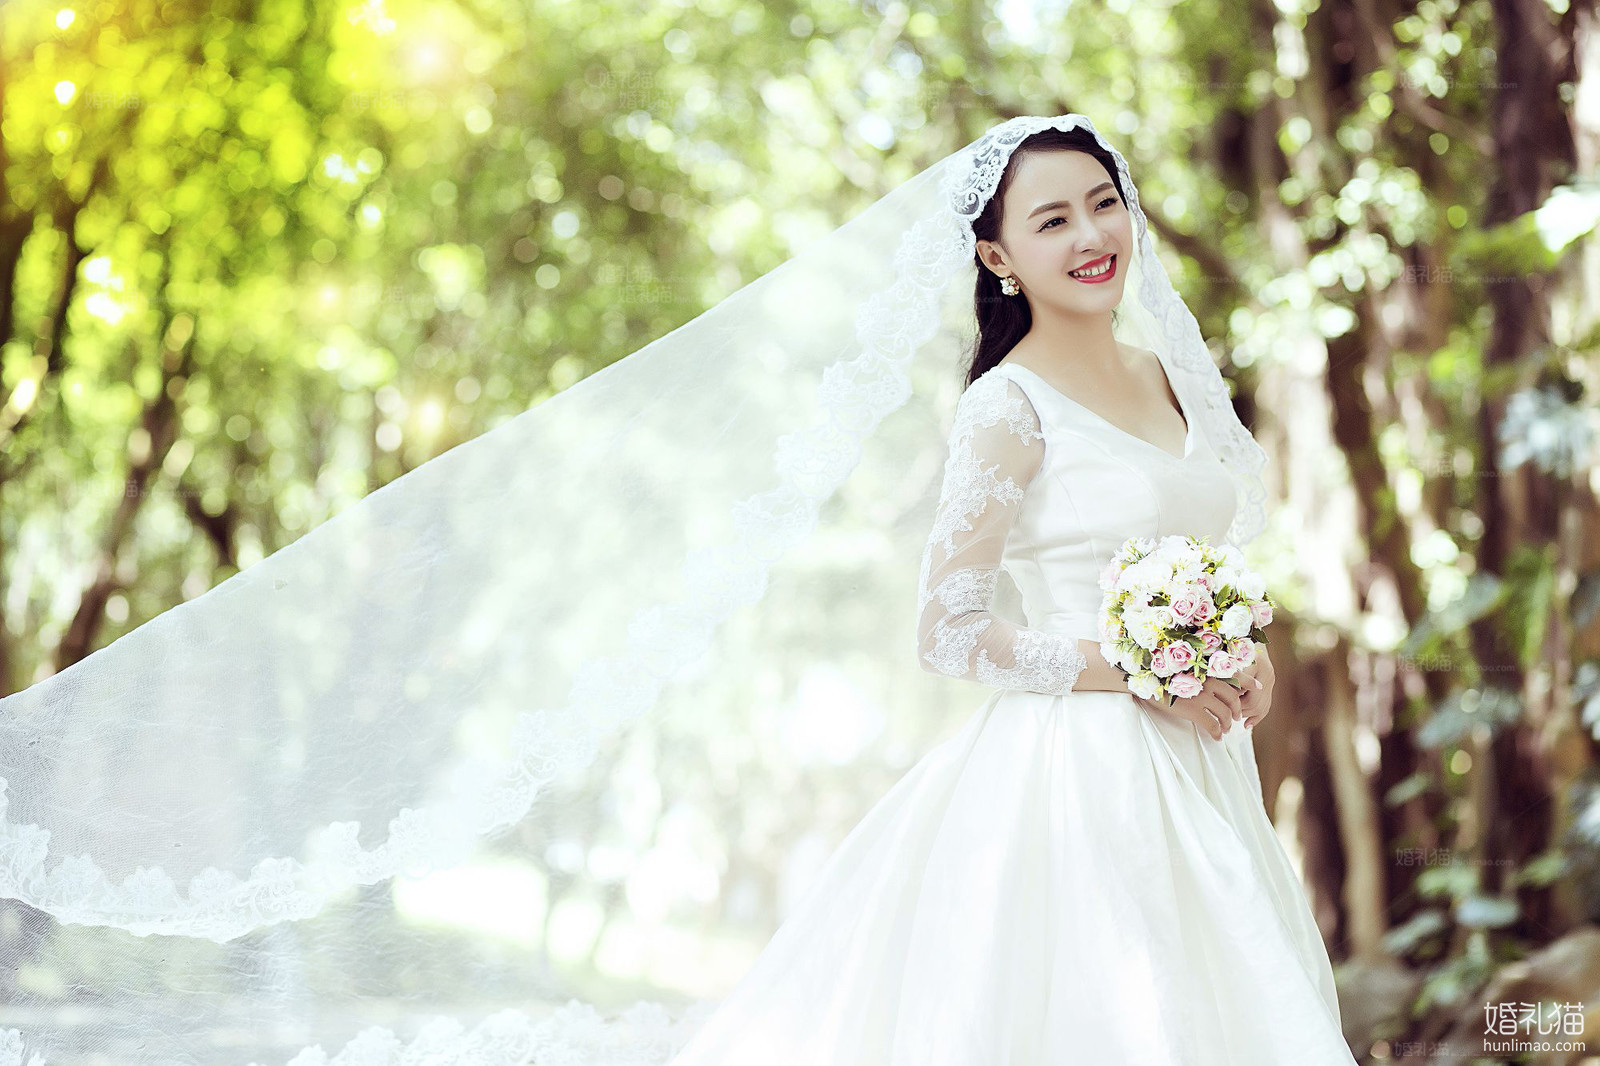 森系结婚照|园林婚纱摄影,[园林, 森系],广州婚纱照,婚纱照图片